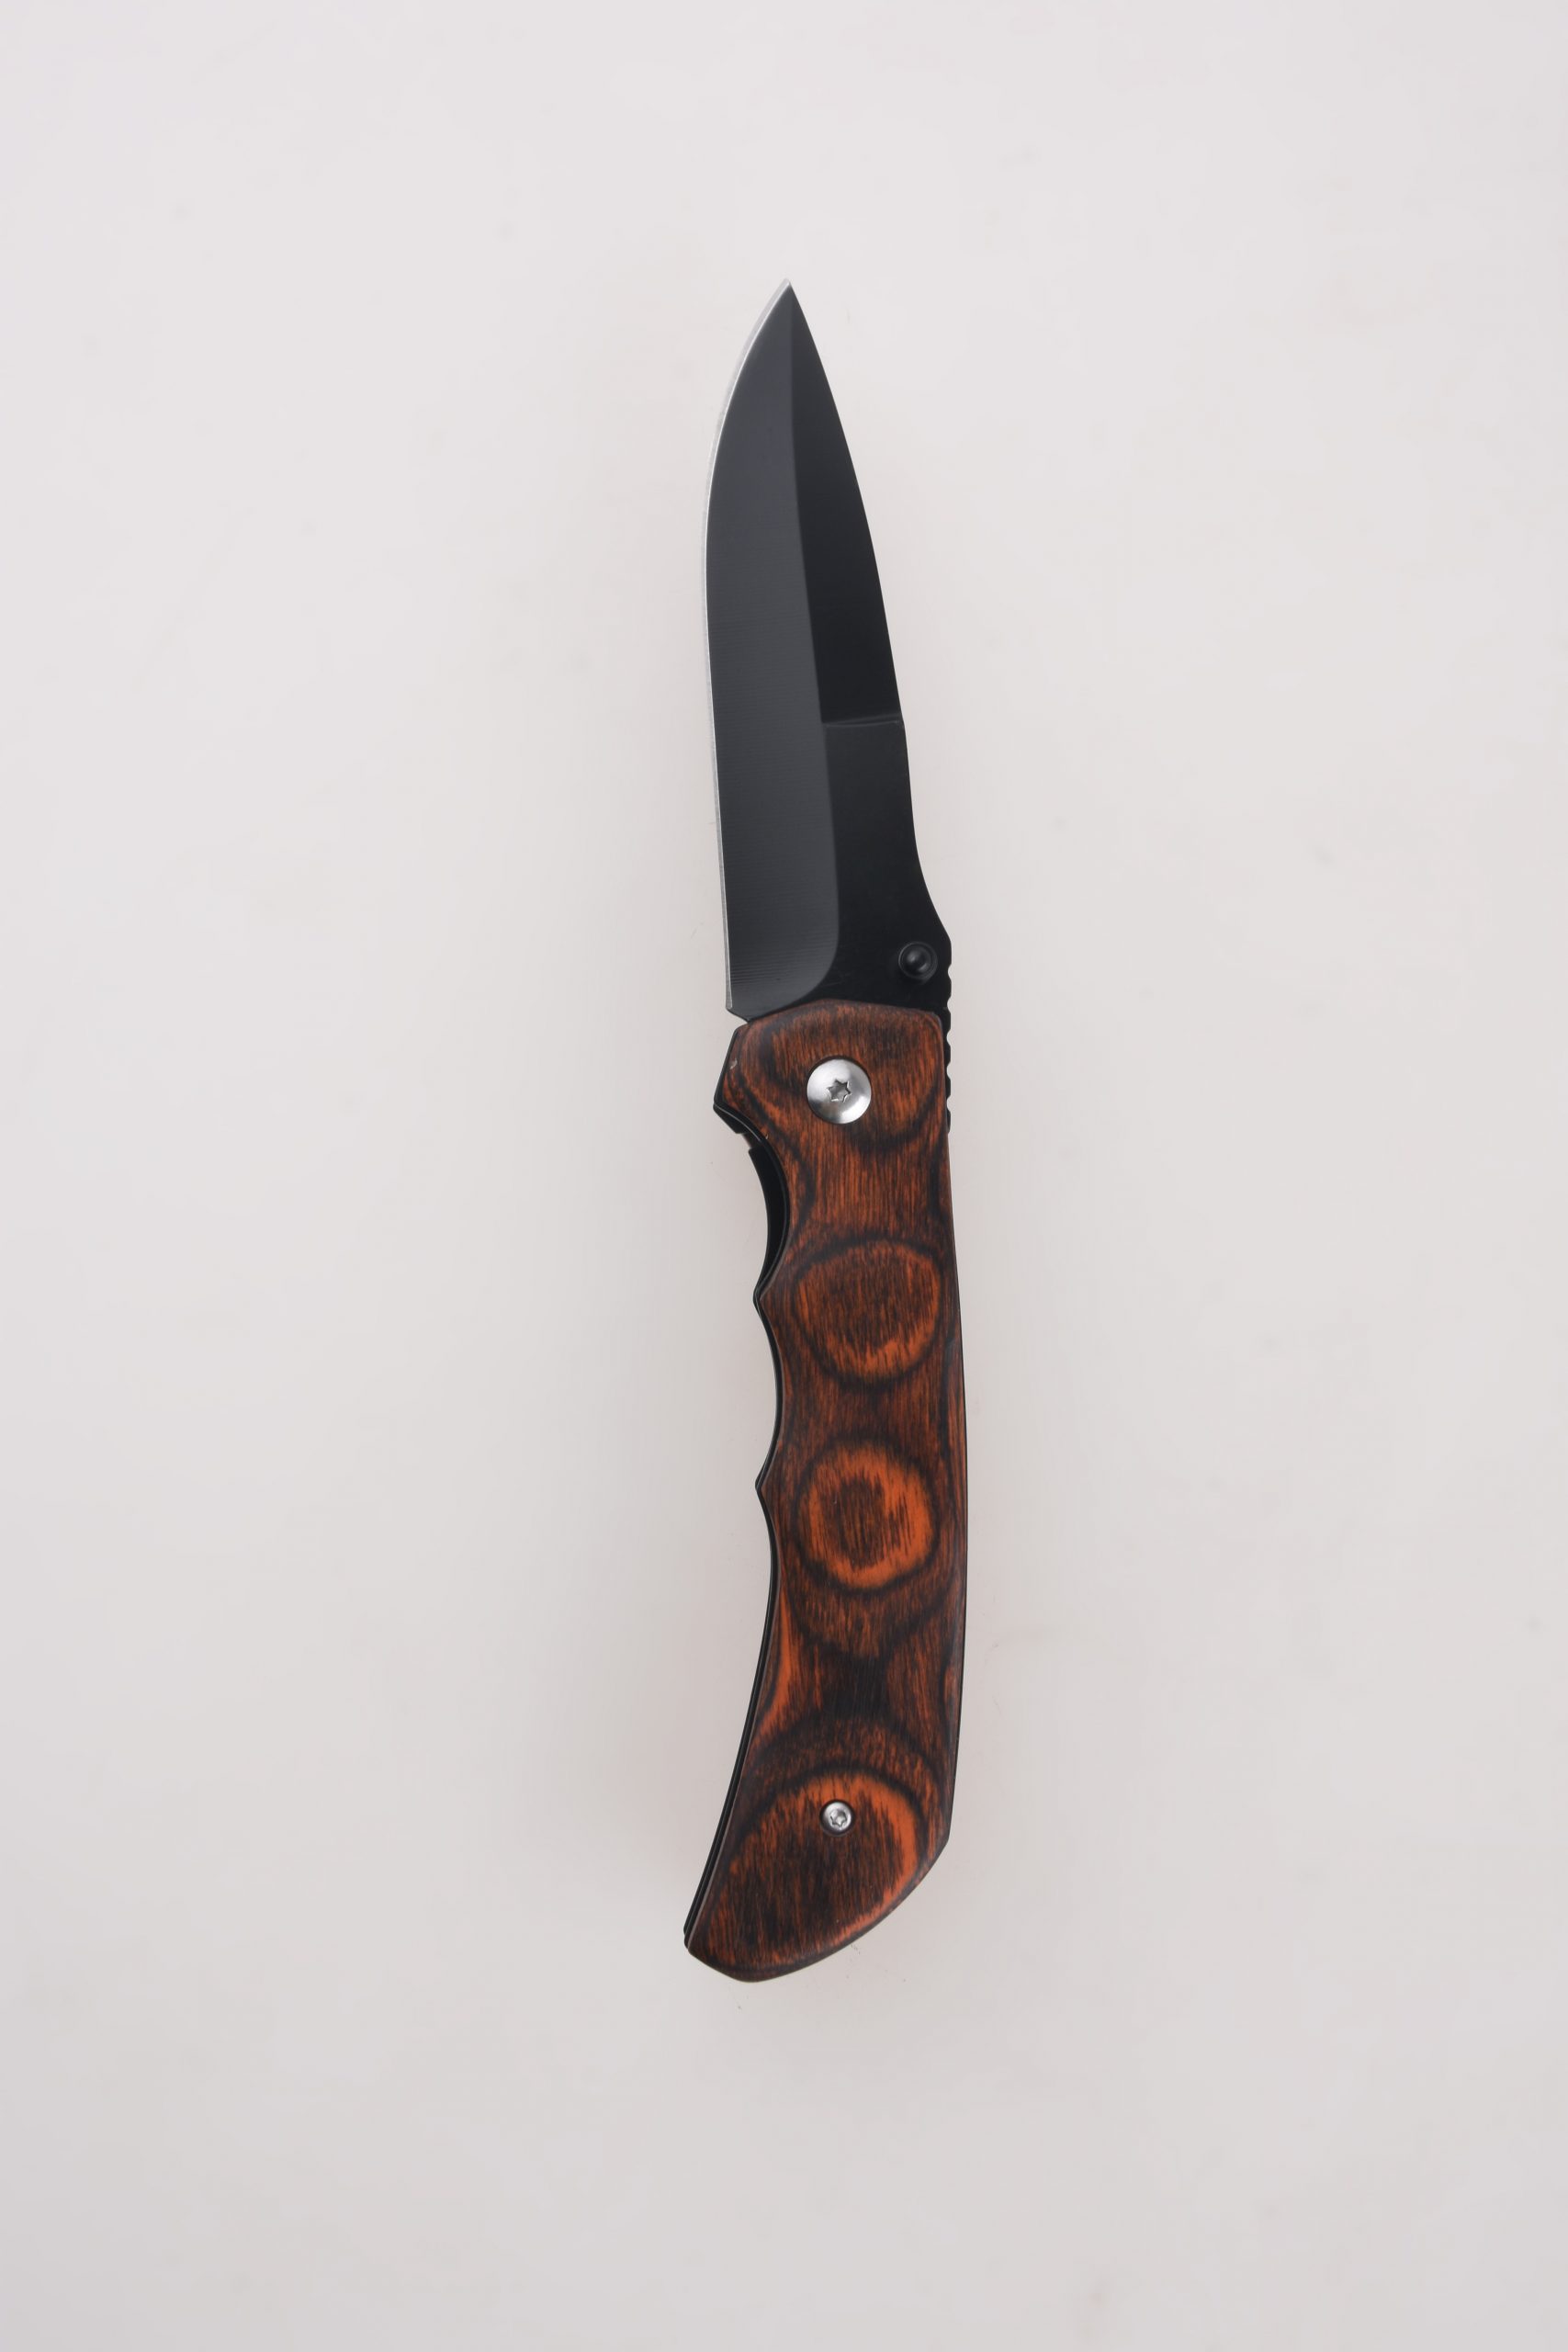 Couteaux pliants OEM manche en bois de couleur des deux côtés goujon de pouce lame de swedge noircie FR-0519